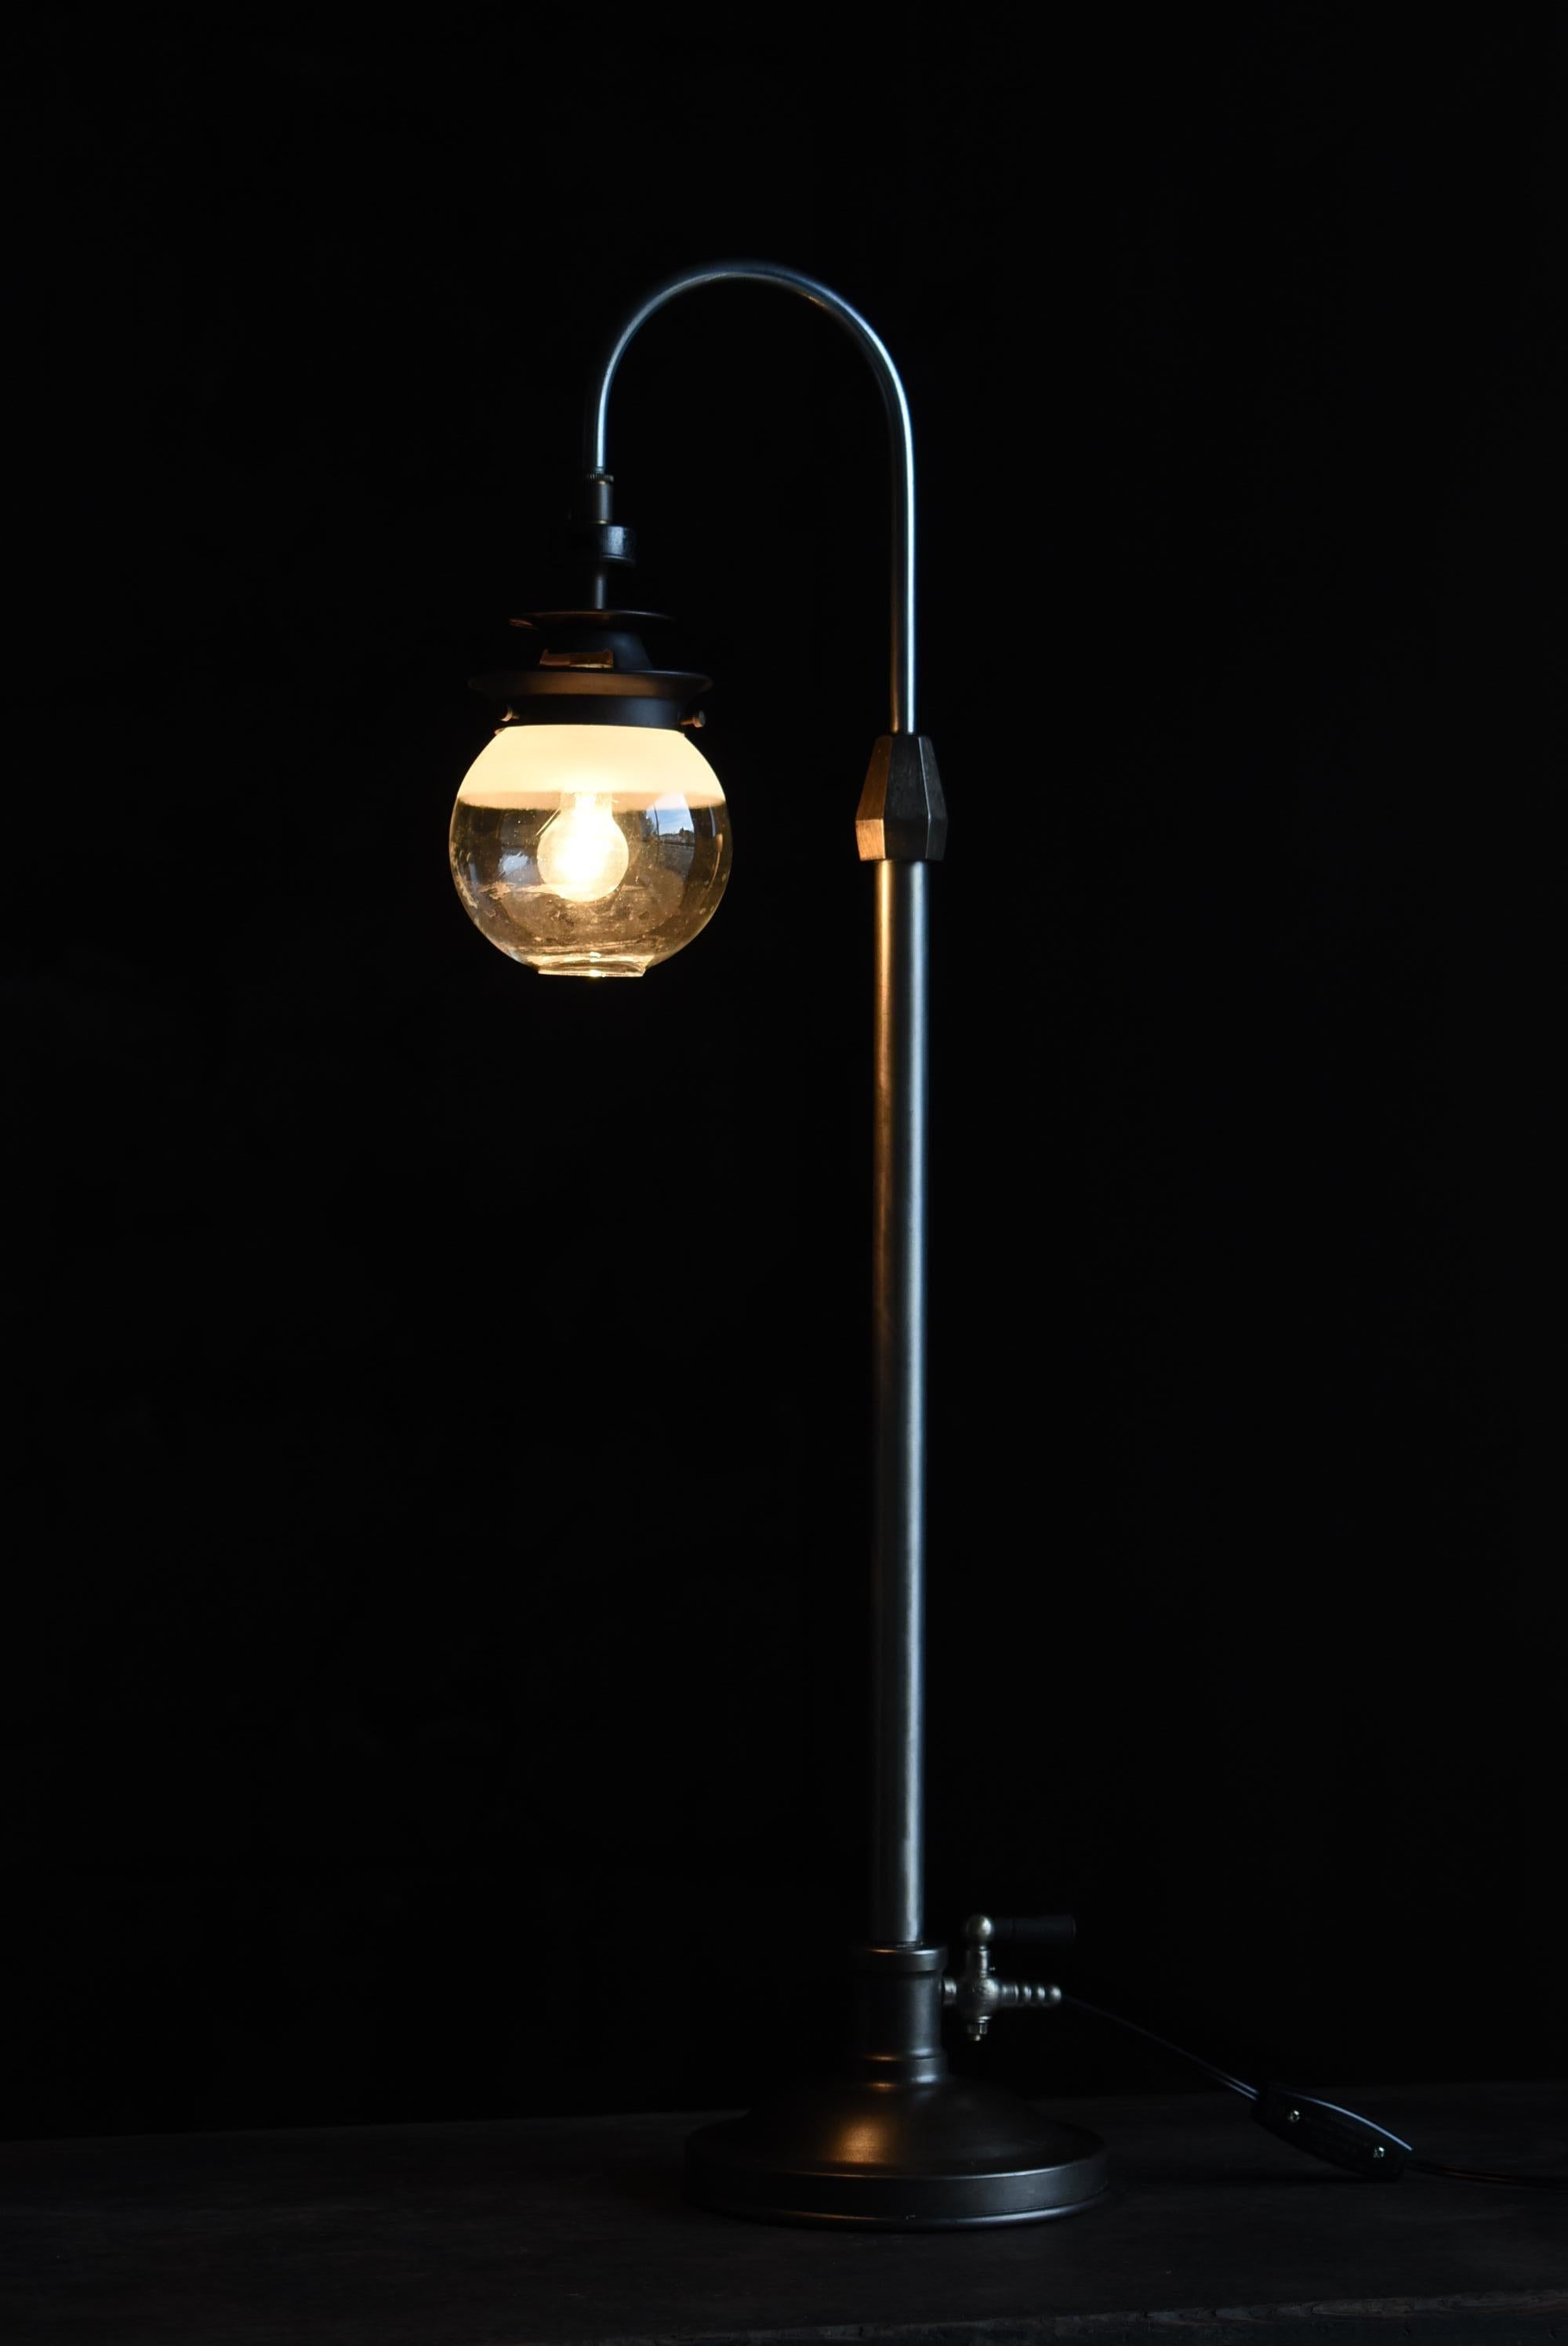 Dies ist eine sehr alte Tischlampe aus Japan.
Diese Lampe stammt aus der frühen Showa-Periode (1920er-1940er Jahre).
Sie ist aus Eisen und Messing gefertigt.
Der Schirm ist aus Glas gefertigt.

Das schlanke Design ist sehr modern.
Sie wird unter